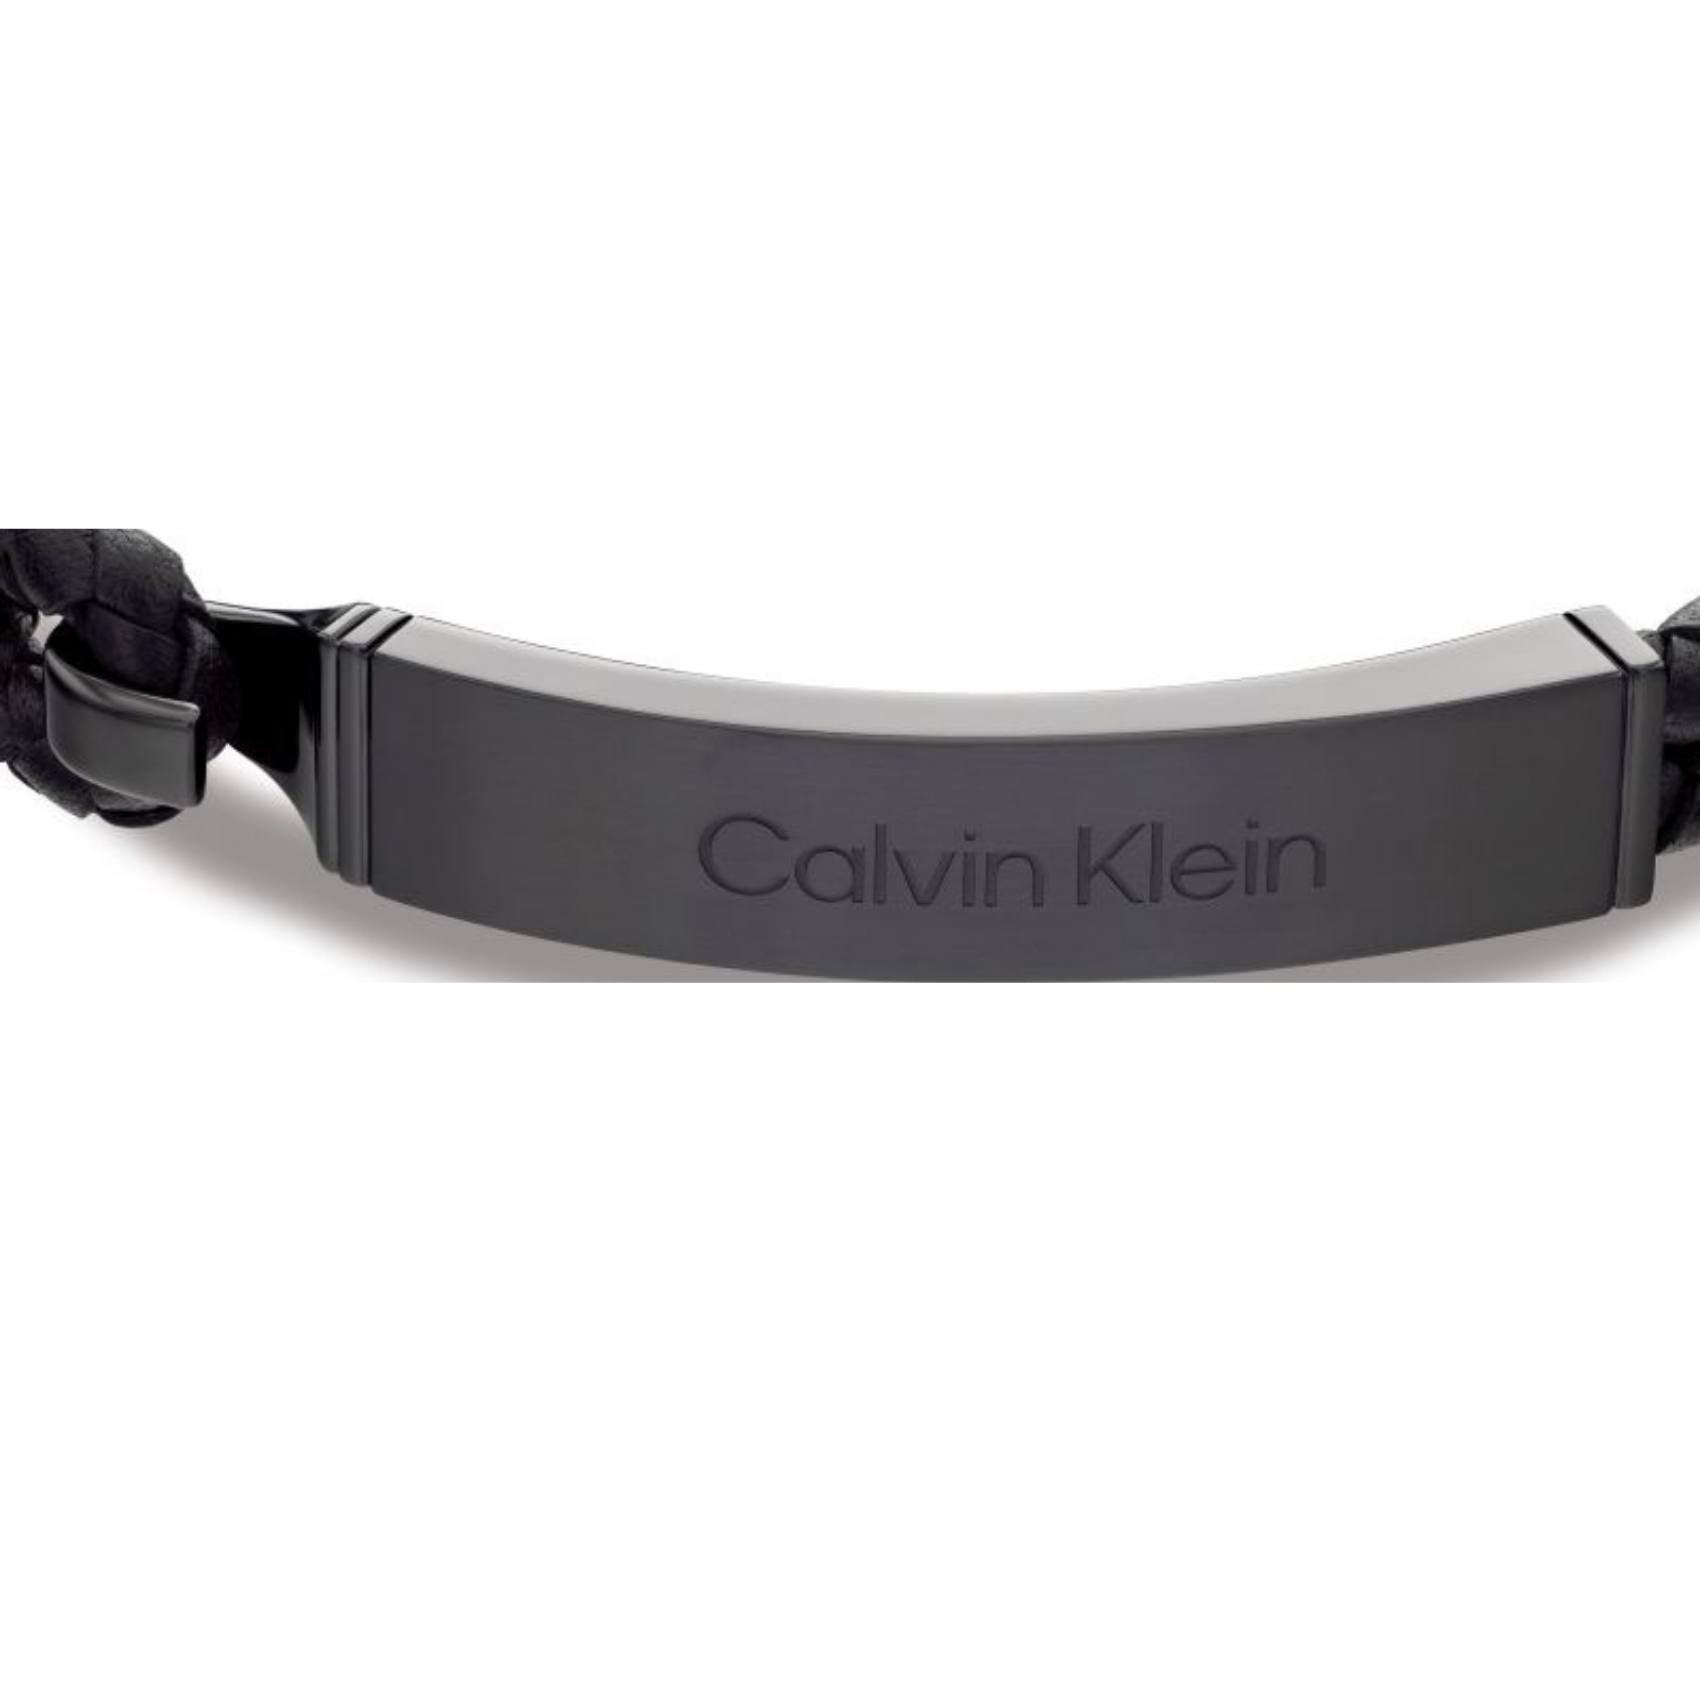 Ανδρικό βραχιόλι Calvin Klein 35000406 από μαύρο δέρμα με μαύρη αγκράφα.